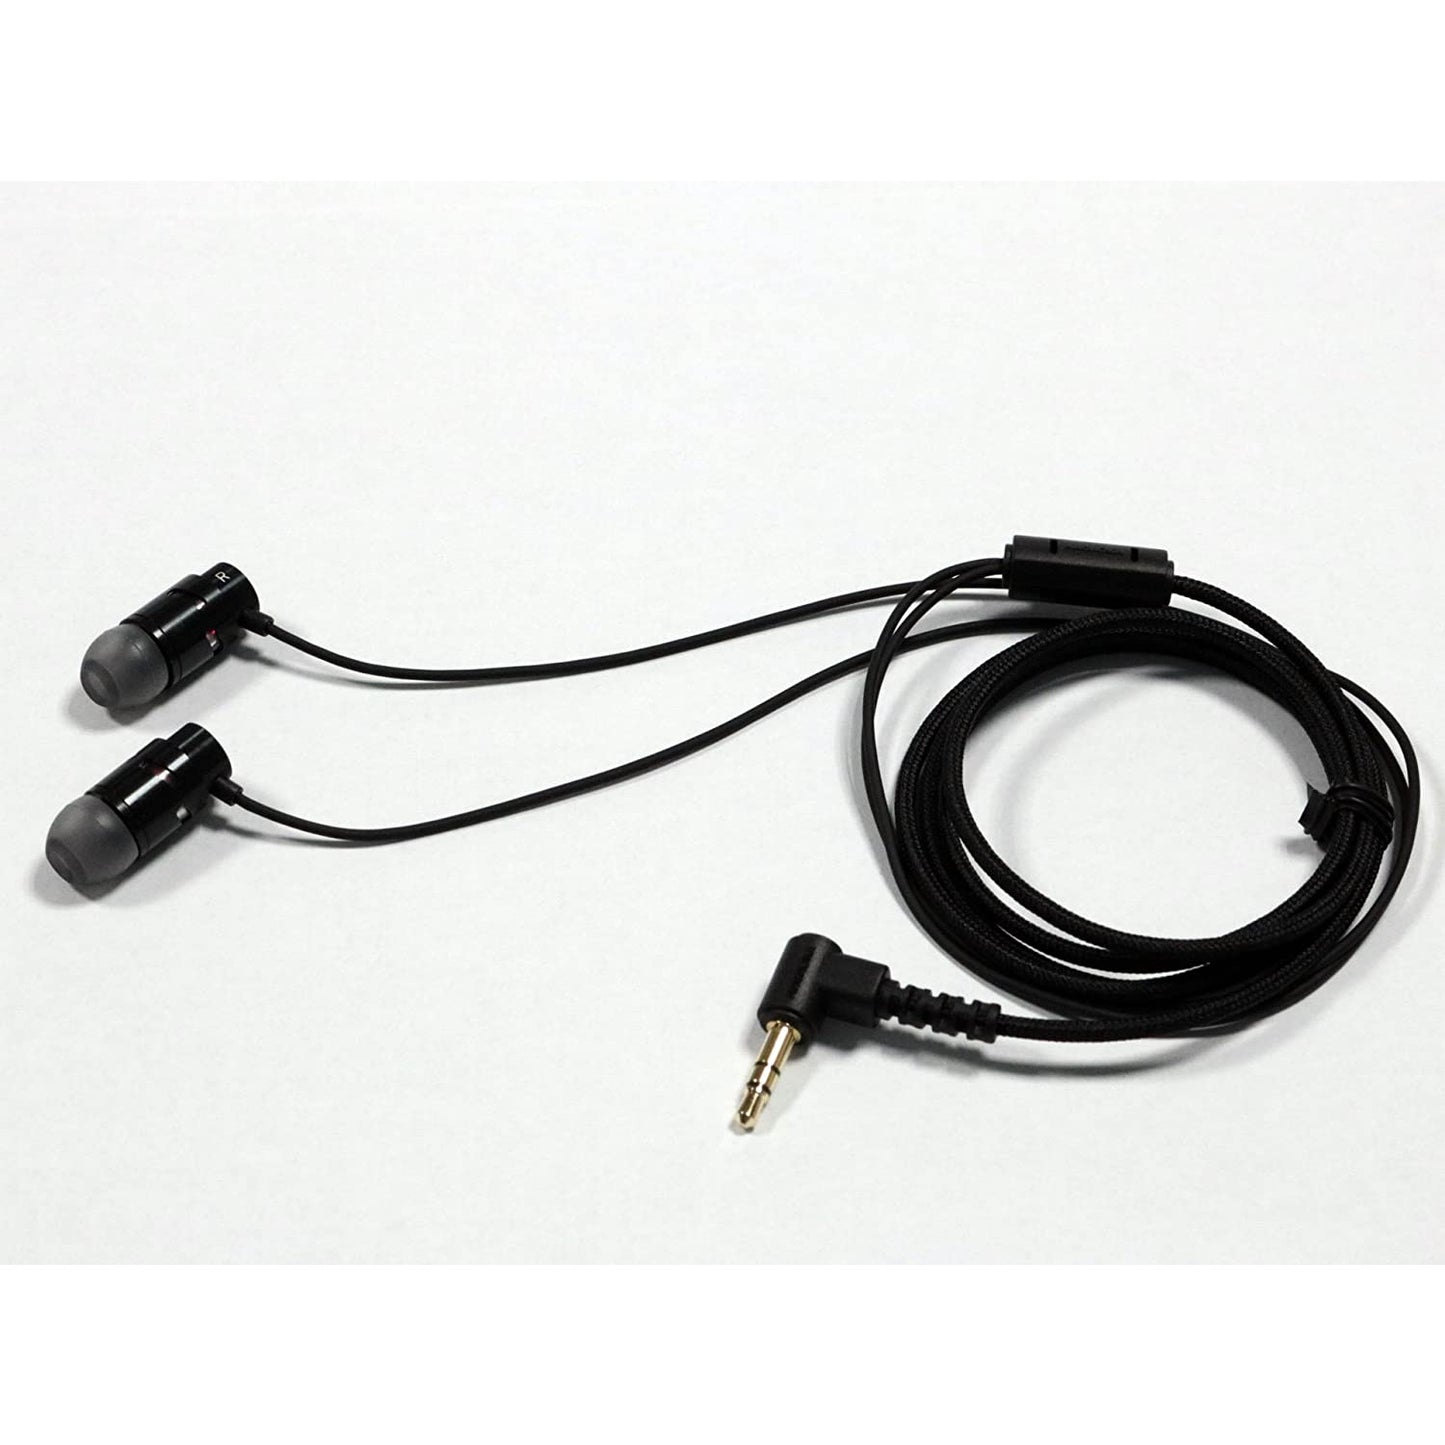 Nagaoka R1 Balanced Armature In Ear Headphones